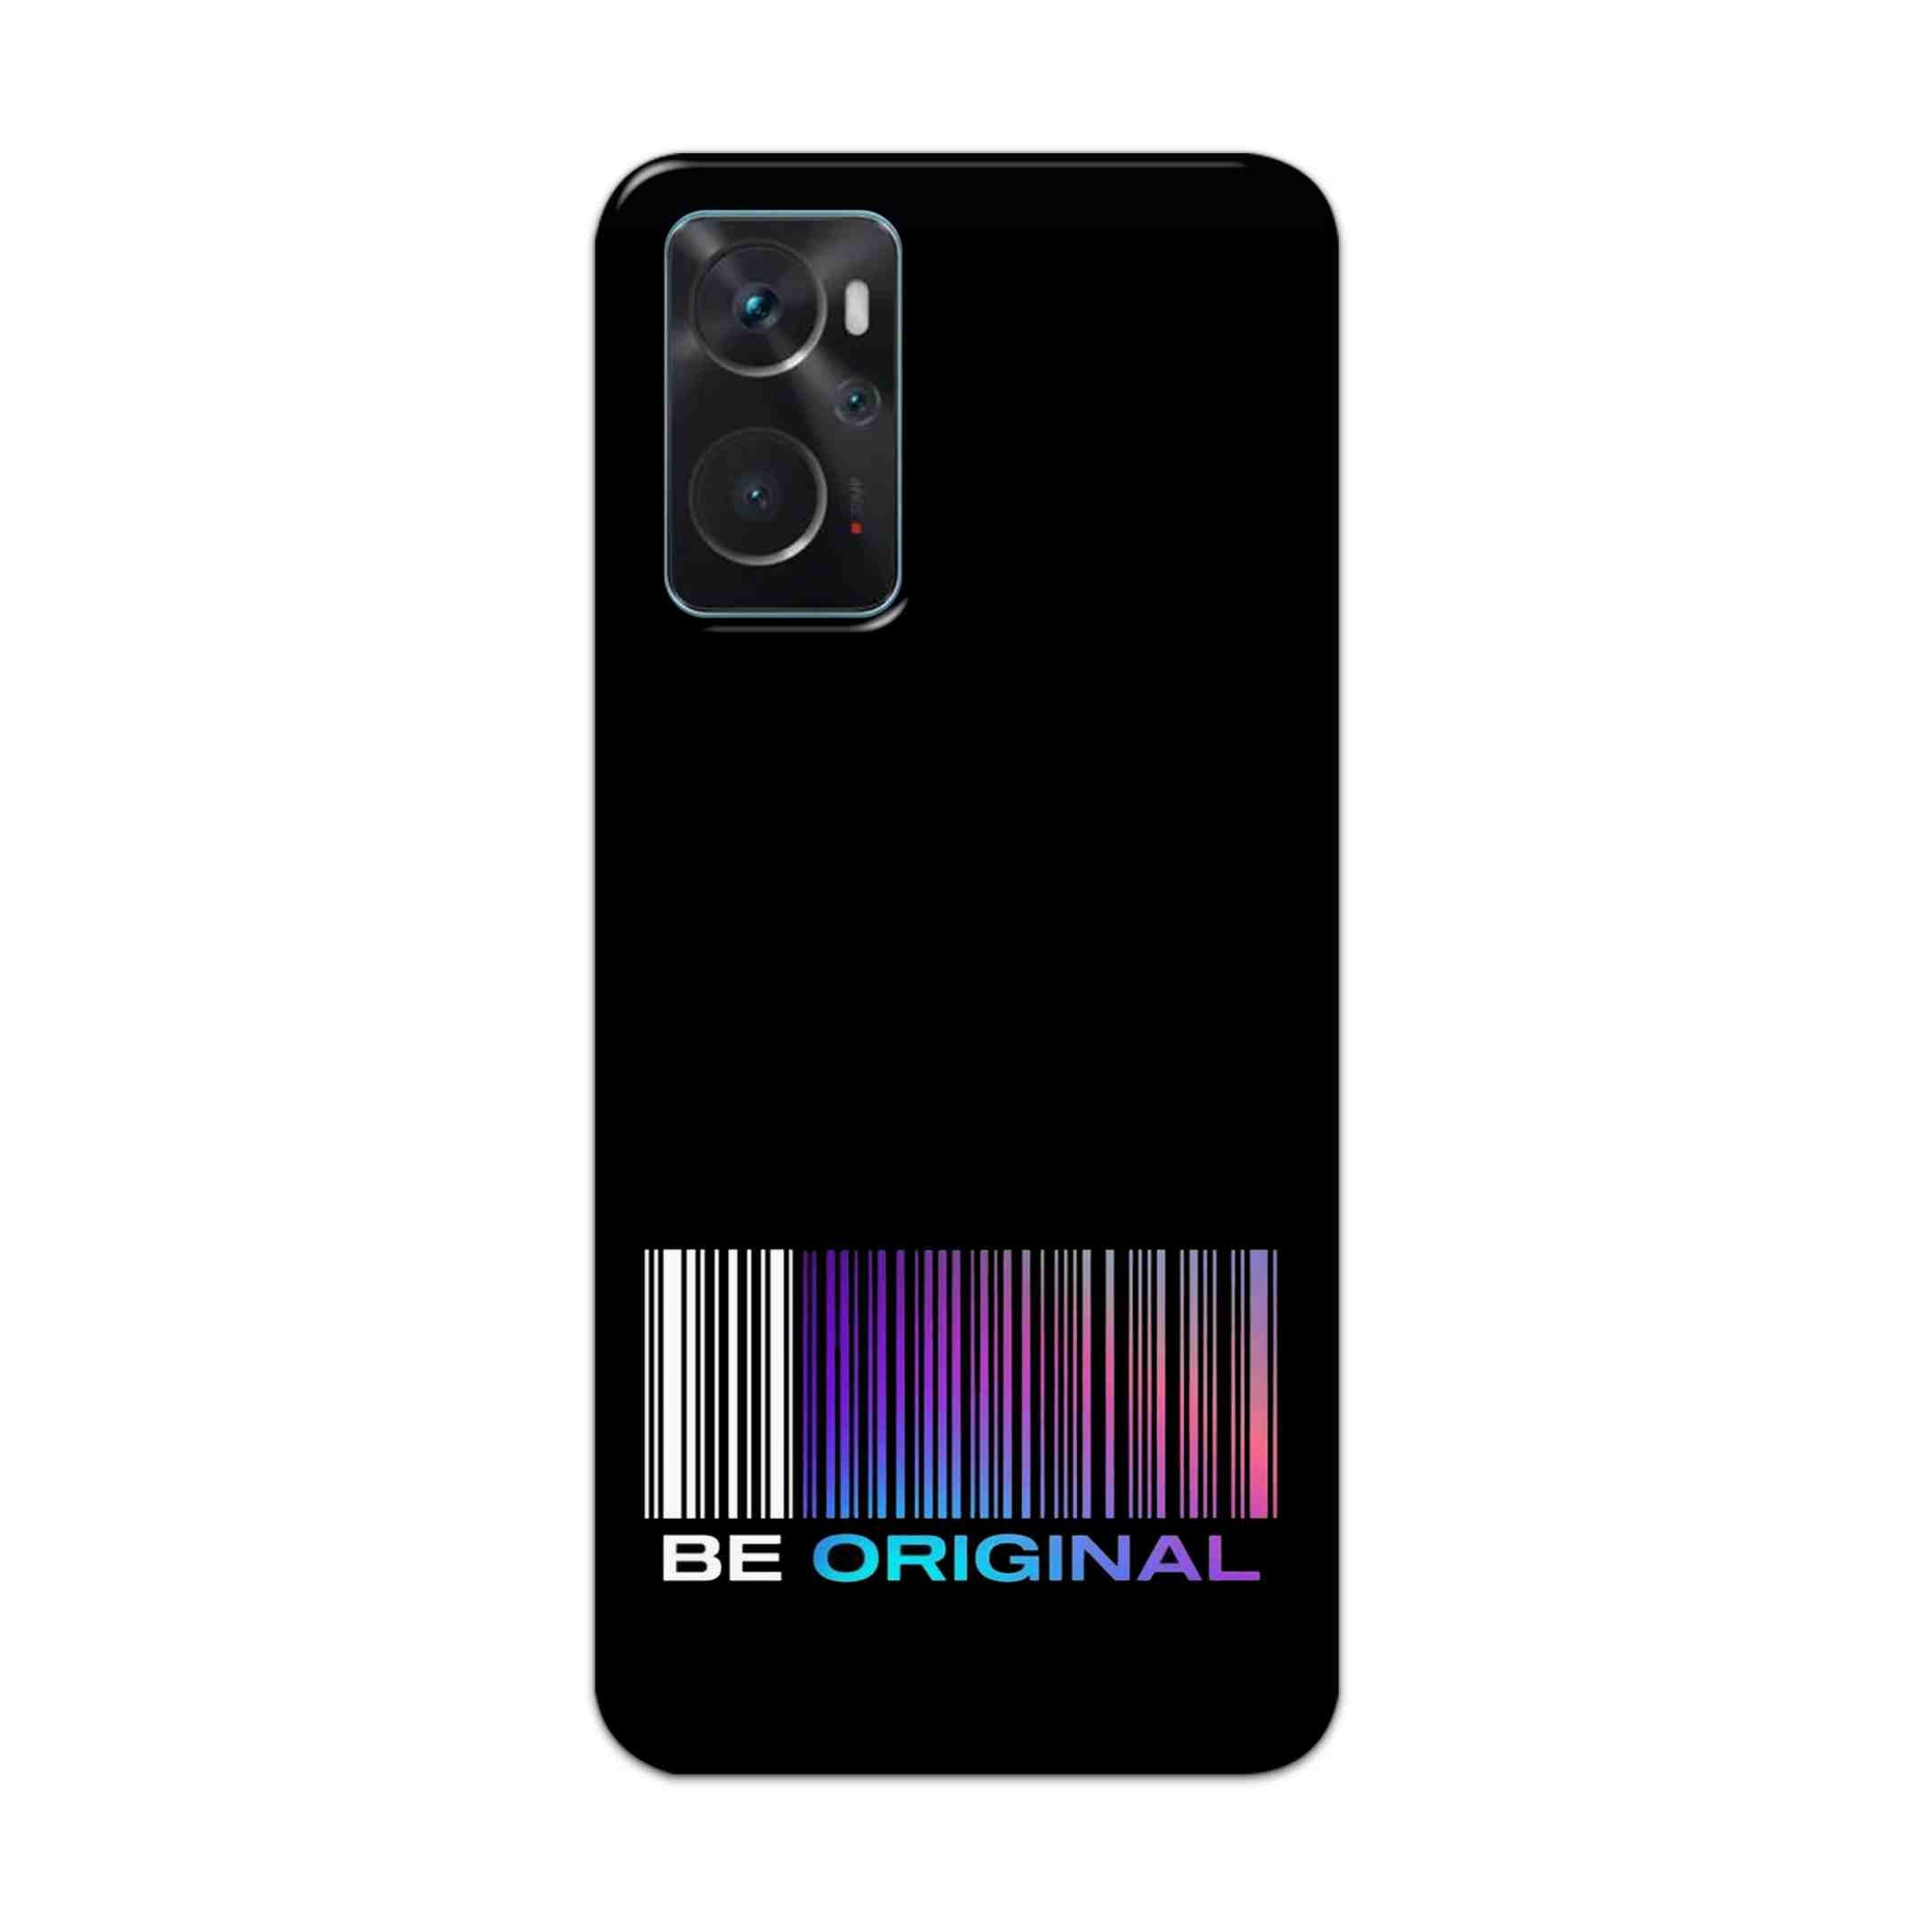 Buy Be Original Hard Back Mobile Phone Case Cover For Oppo K10 Online